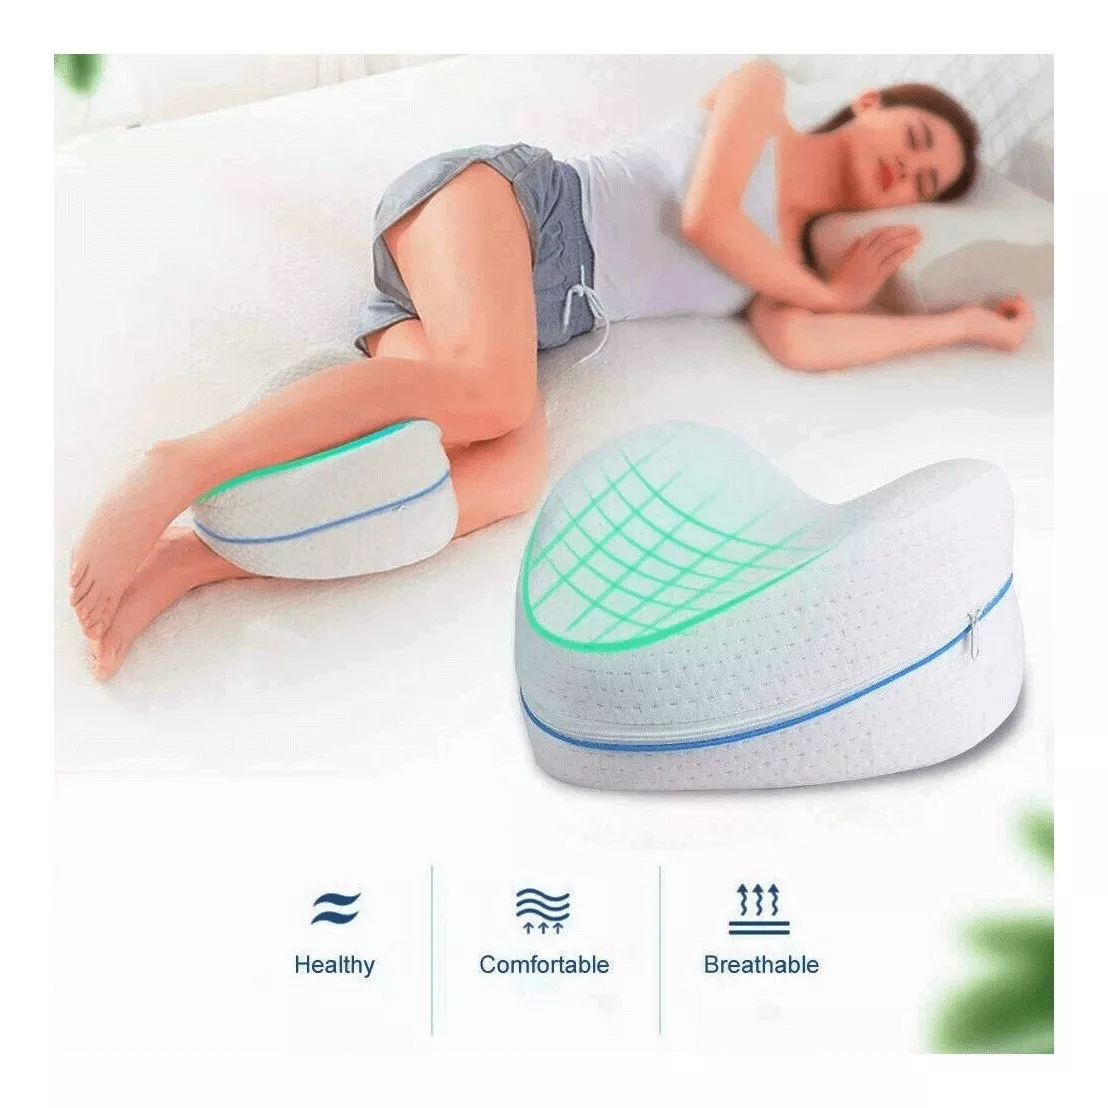 Dormitienda - Descubre nuestra nueva almohada Piernas Confort, con  Viscoelástica Memory de alta calidad. Son muchos sus beneficios: 1- Se  adapta perfectamente entre las piernas a la altura de las rodillas para